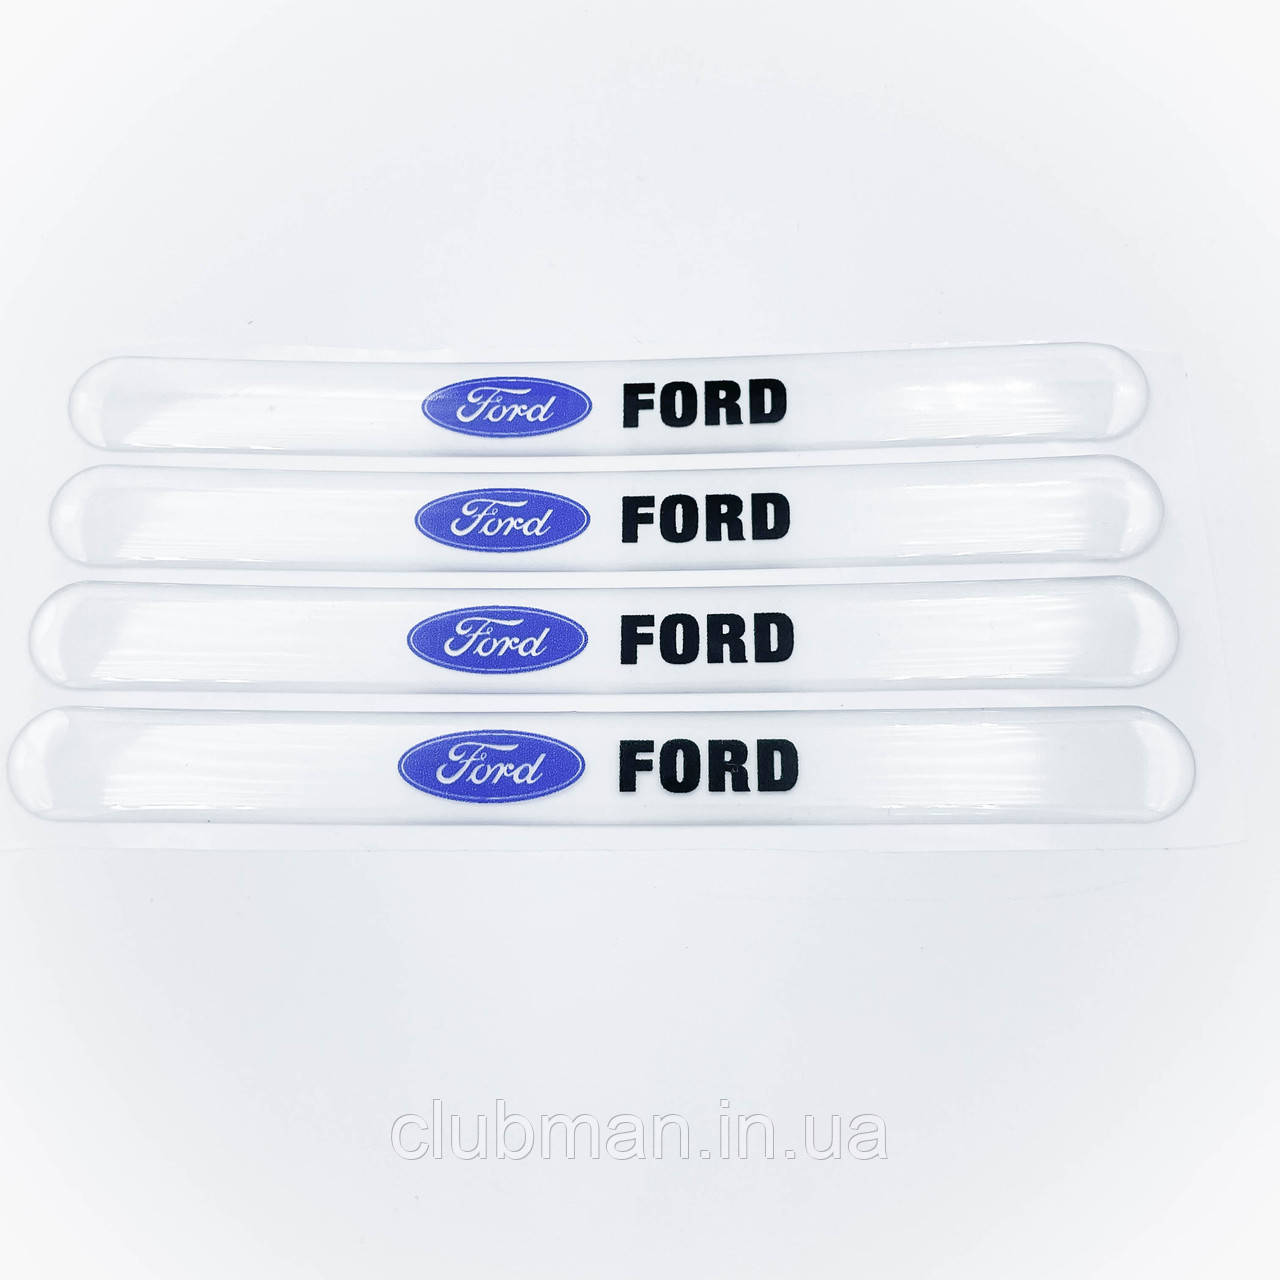 Захист на ручку дверей/ наклейки FORD (Форд) - Комплект 4 шт